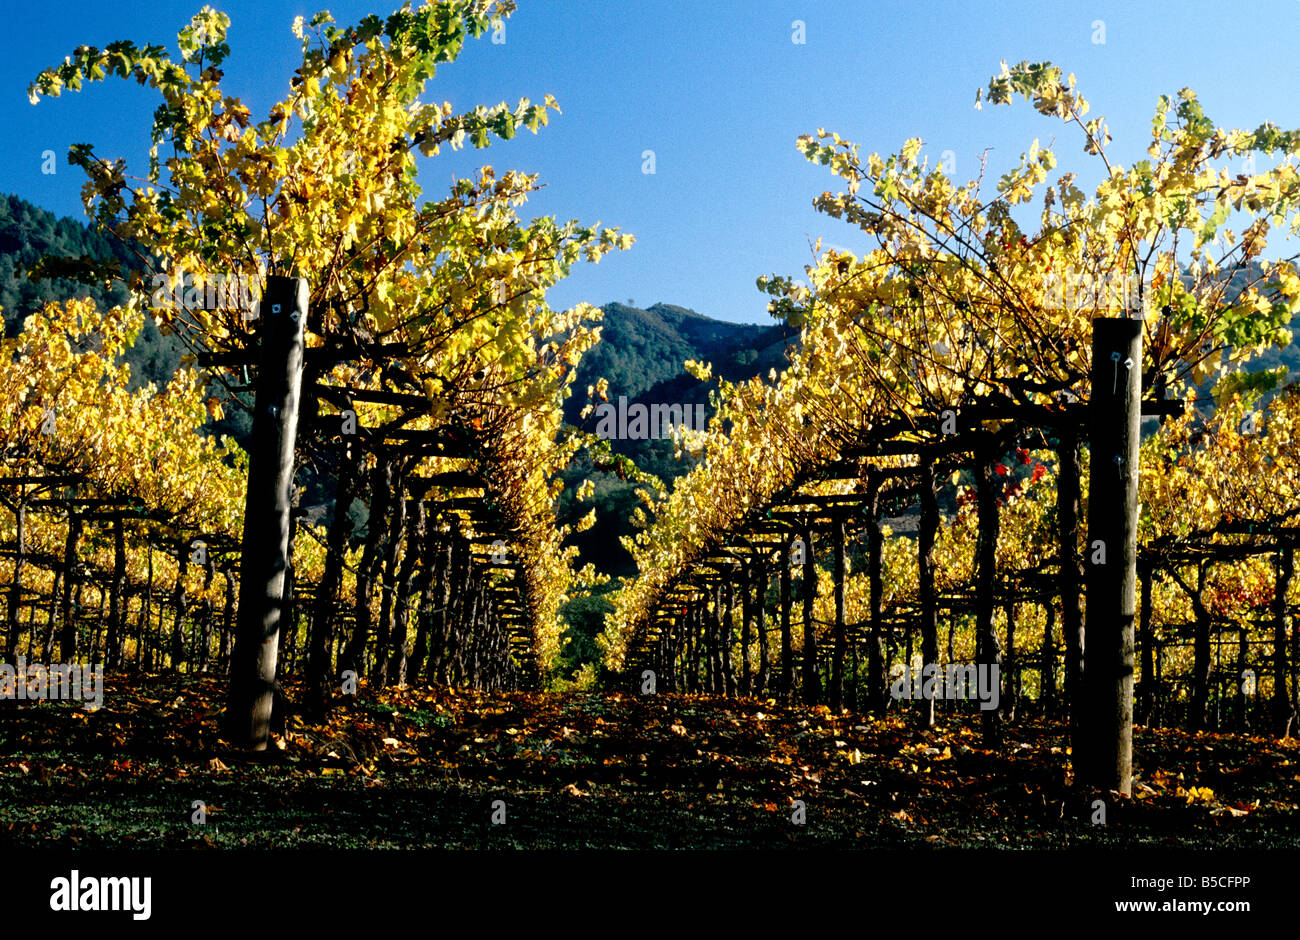 Vineyard in fall foliage. Stock Photo